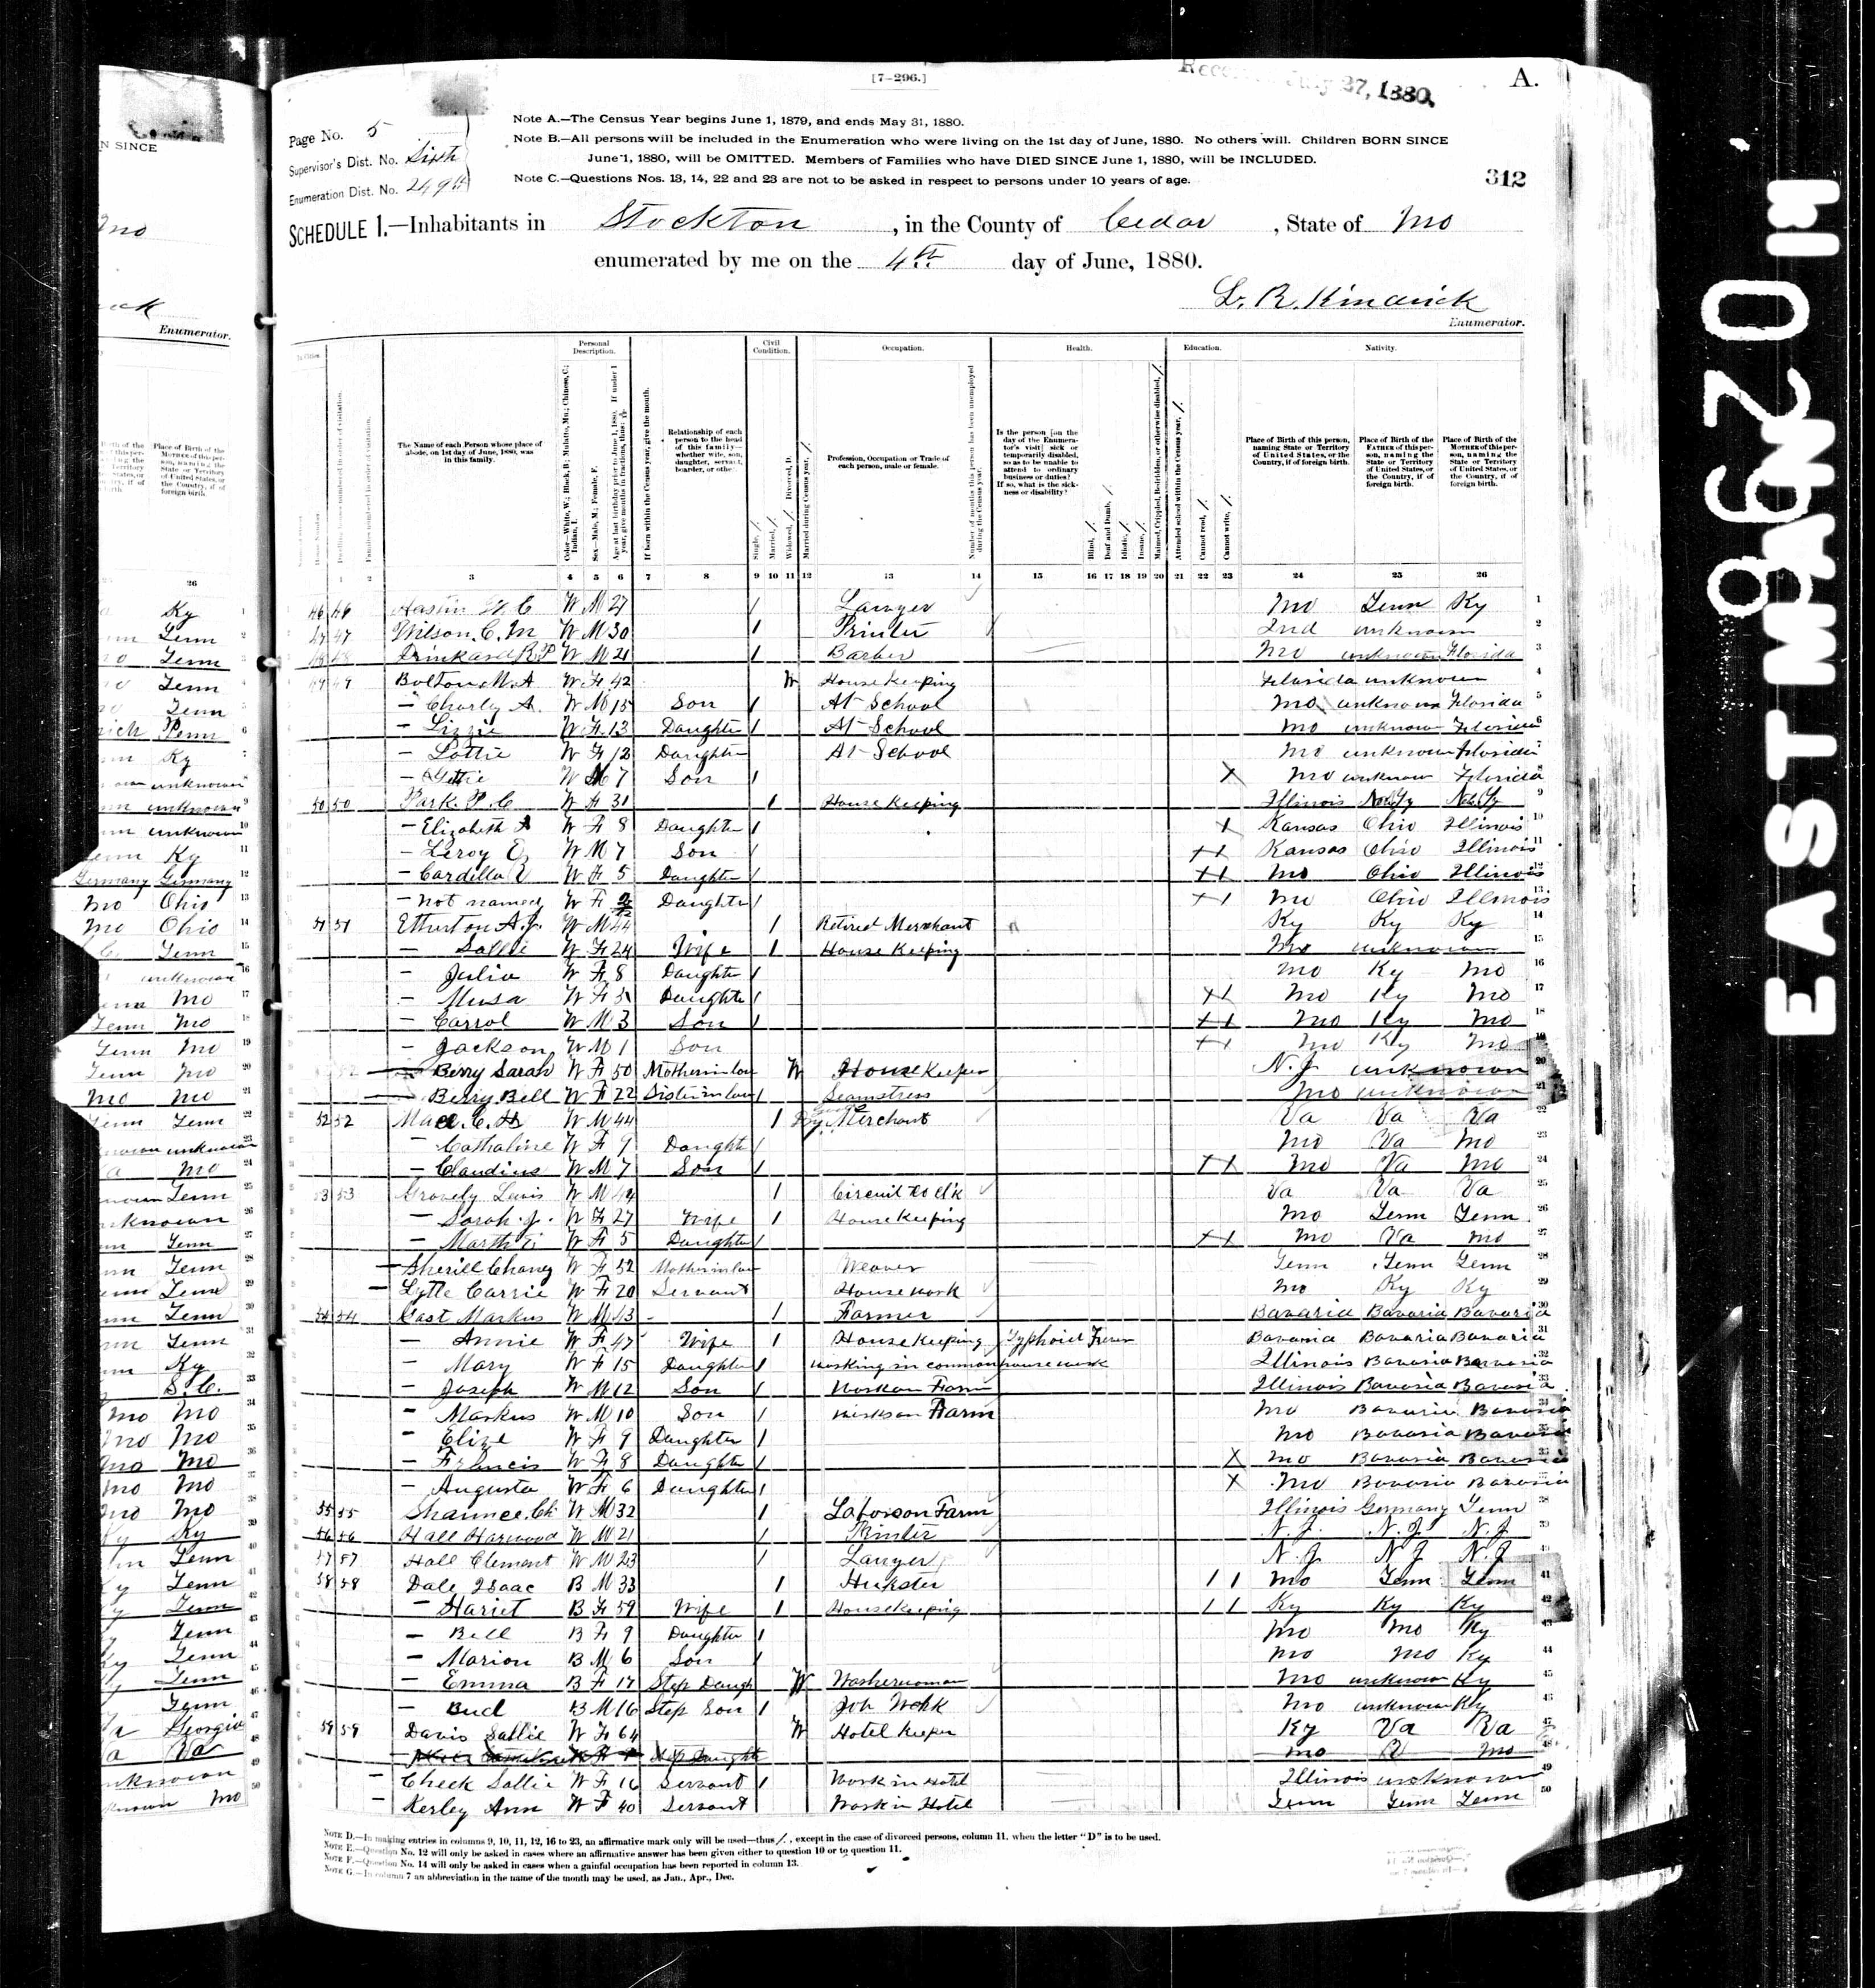 Chaney A. (Hartley) Sherrill, daughter of James Hartley and Elizabeth Walker, 1880 Cedar County, Missouri, census